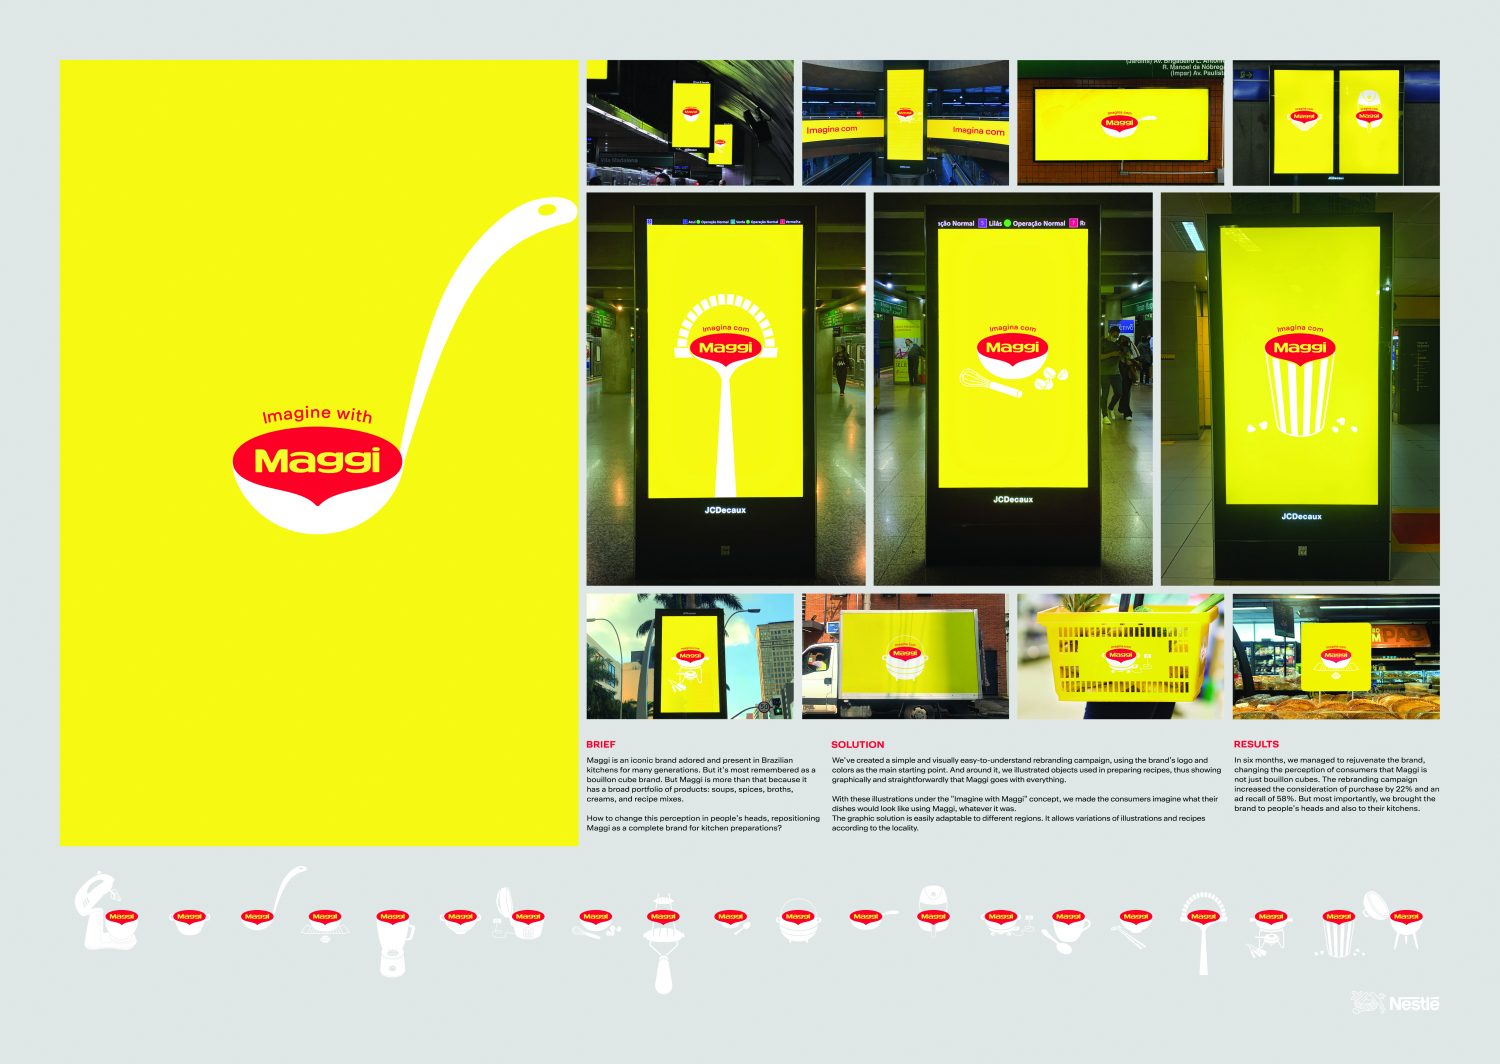 2021-Nestle Maggi-Imagine With Maggi-Board Outdoor-Publicis Brazil-jpg